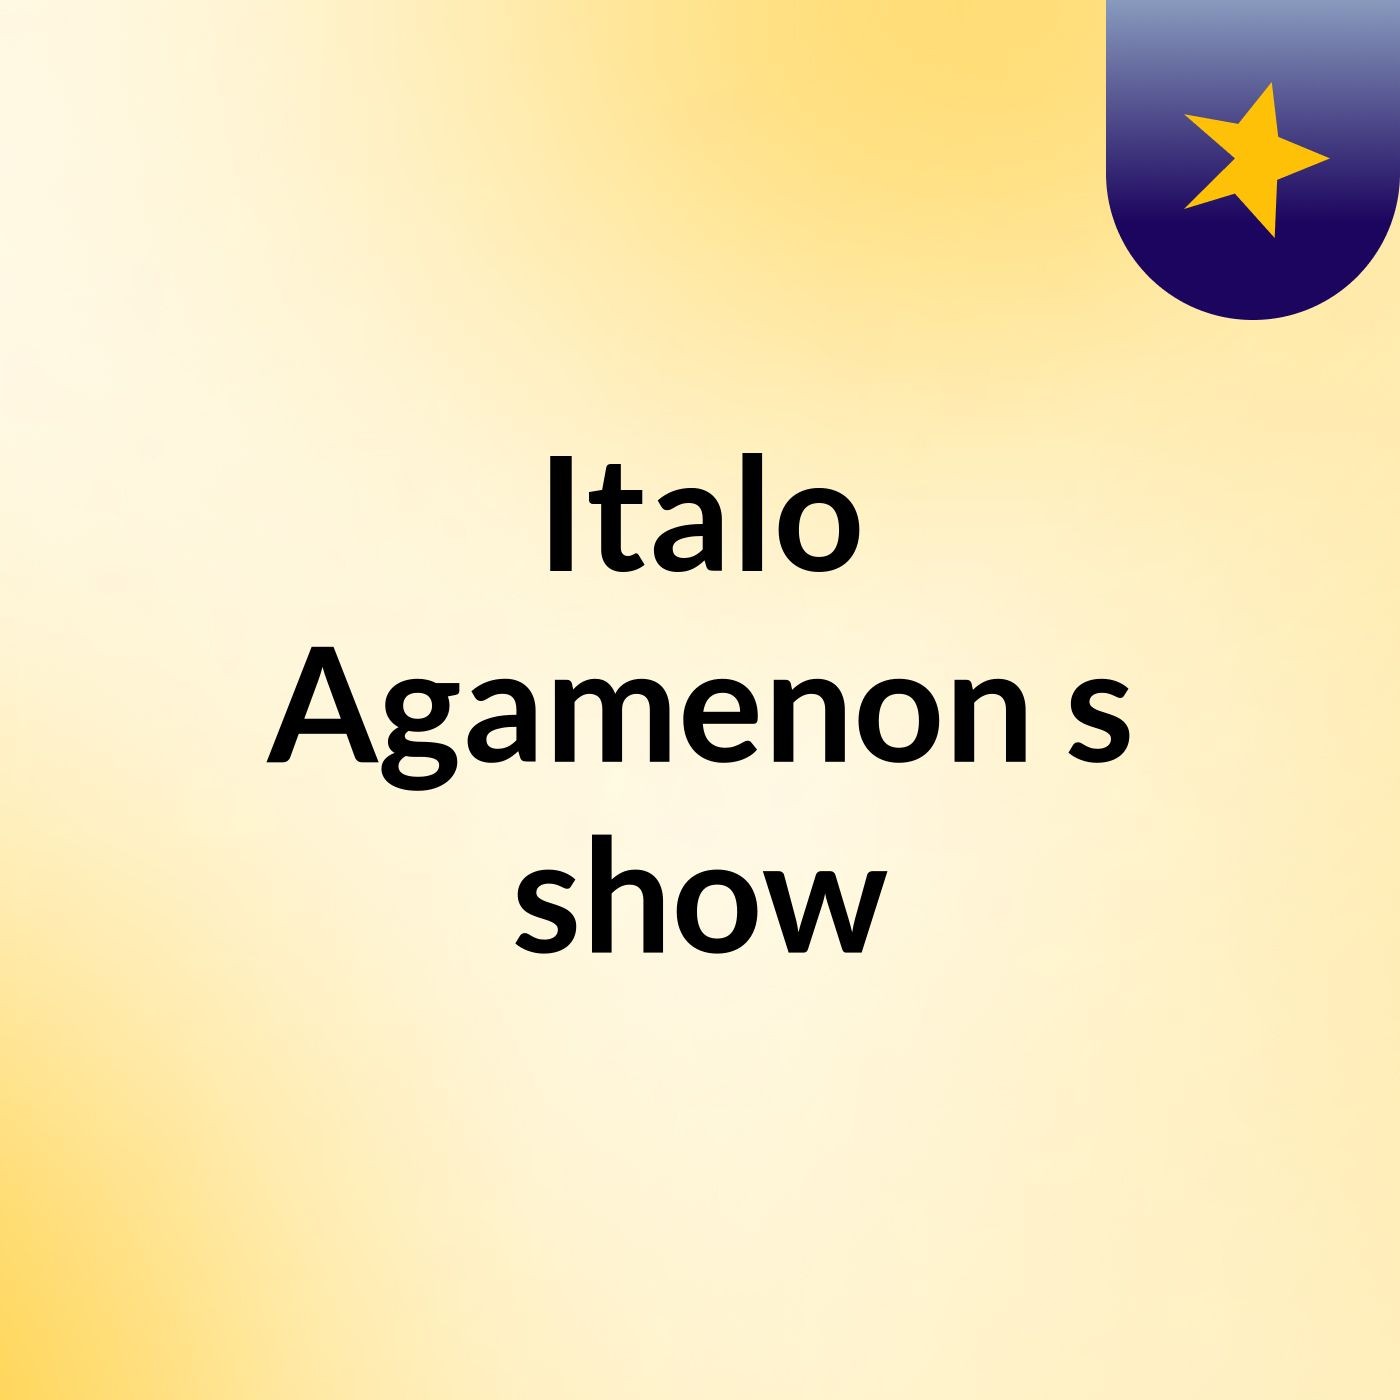 Italo Agamenon's show